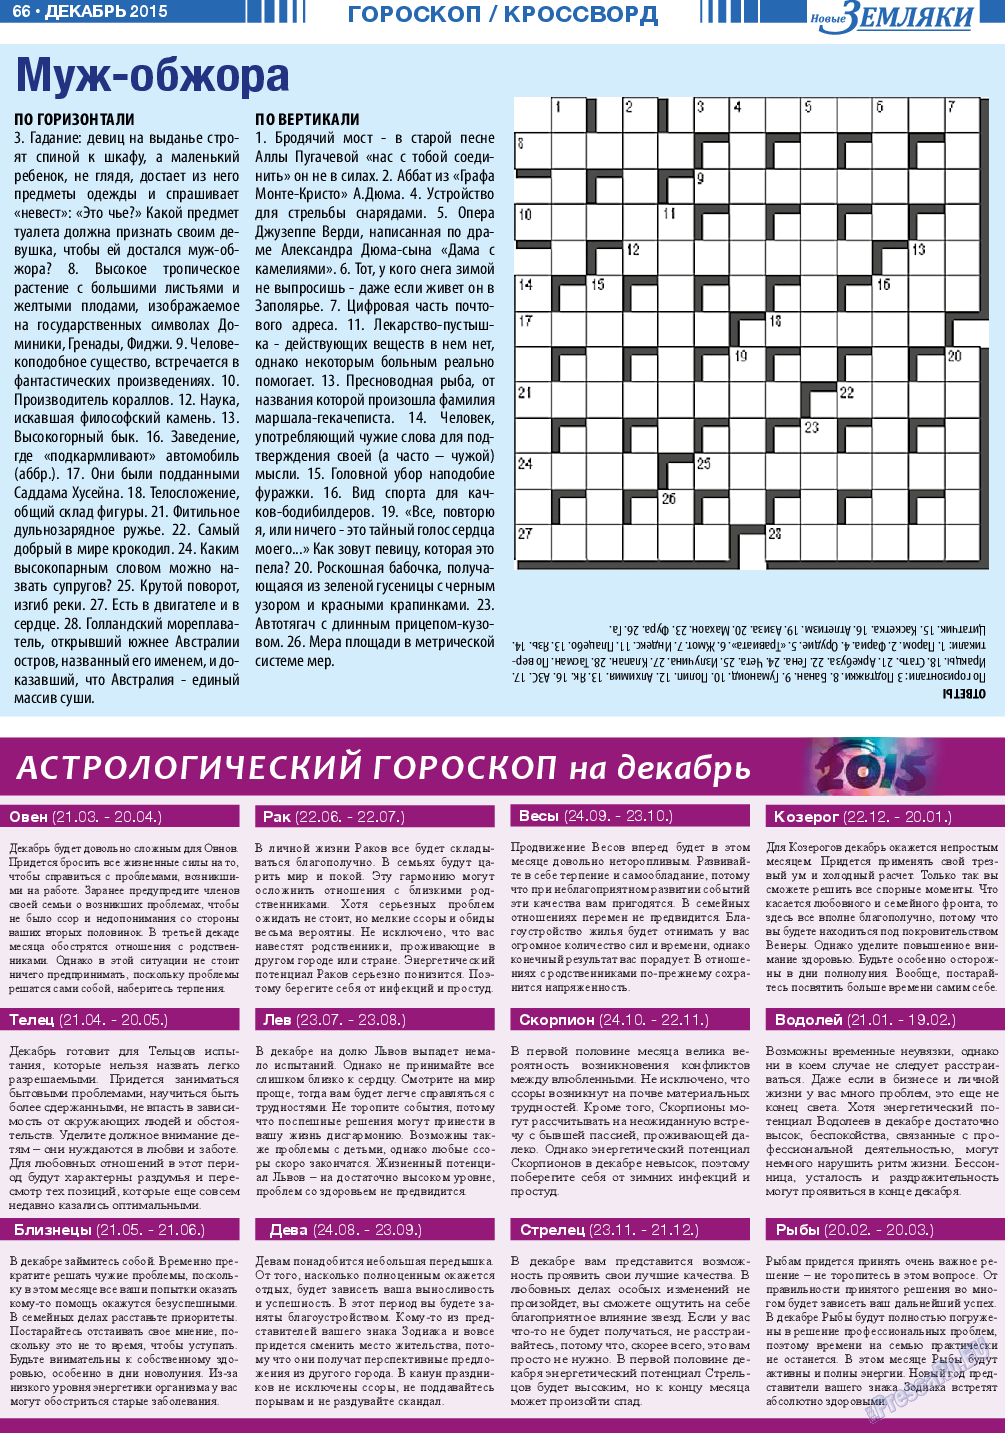 Новые Земляки, газета. 2015 №12 стр.66